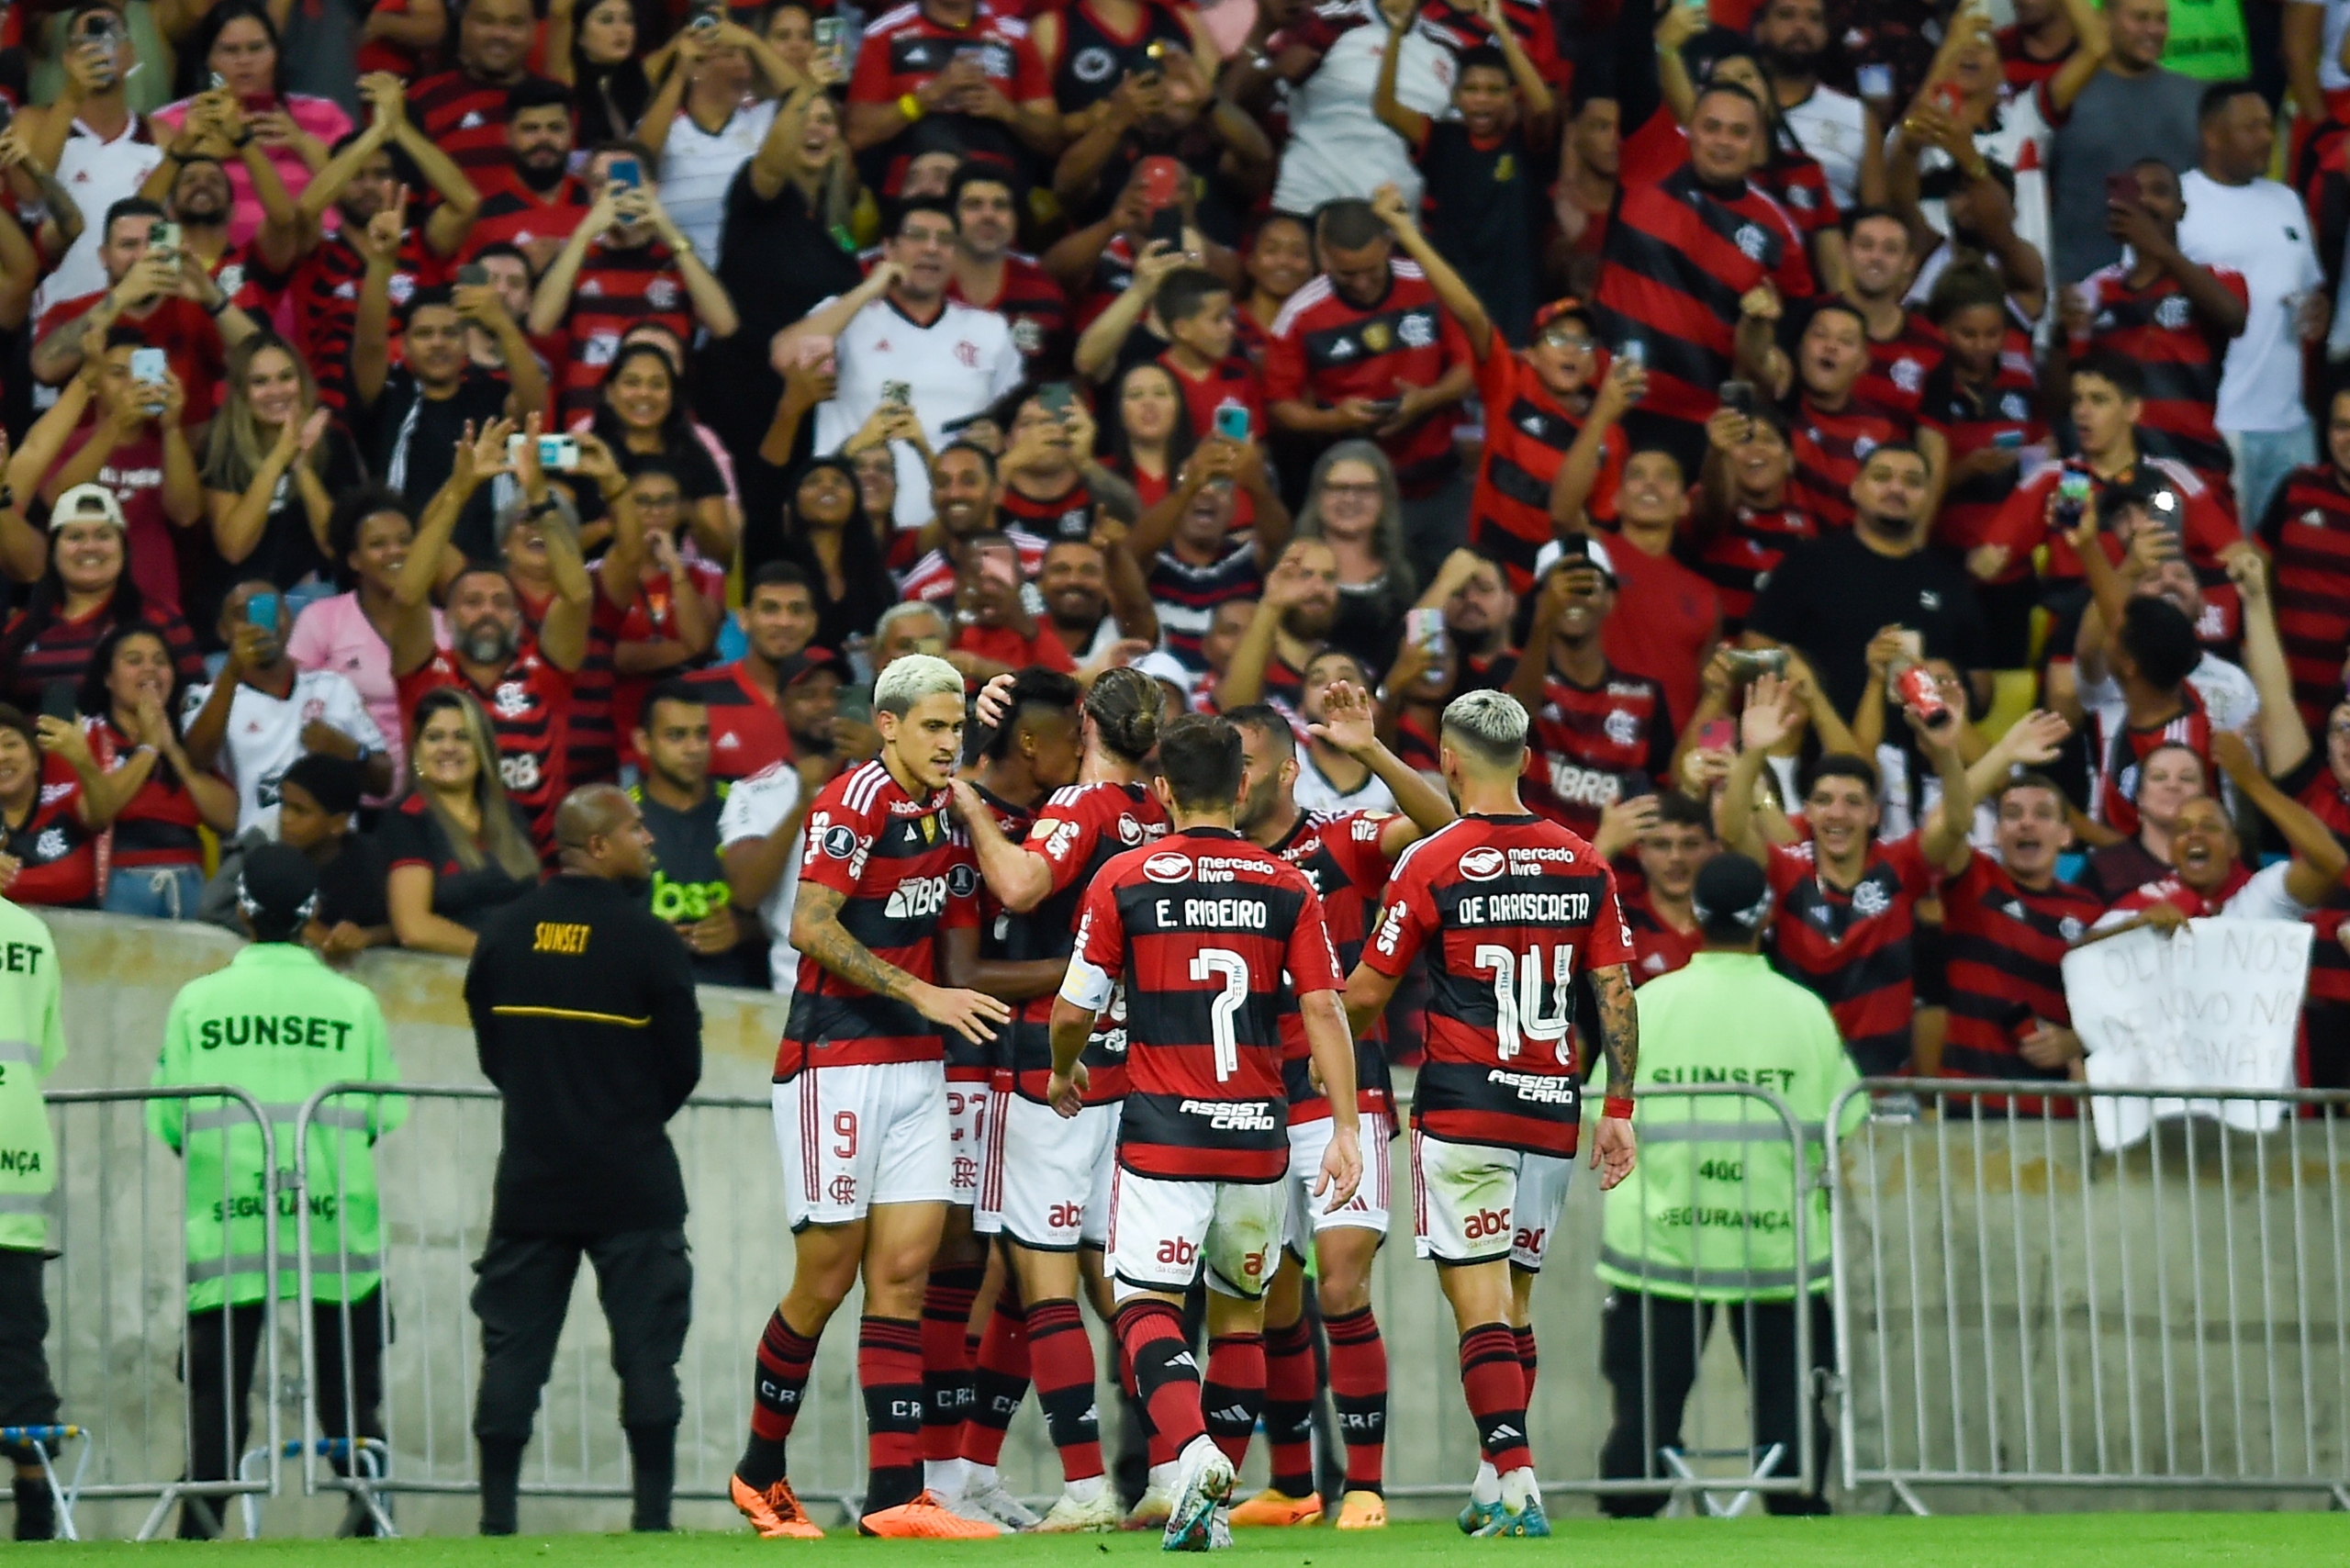 #Libertadores: Flamengo faz 4 a 0 no Aucas, Bruno Henrique brilha e rubro-negro avança para as oitavas em 2° no grupo A